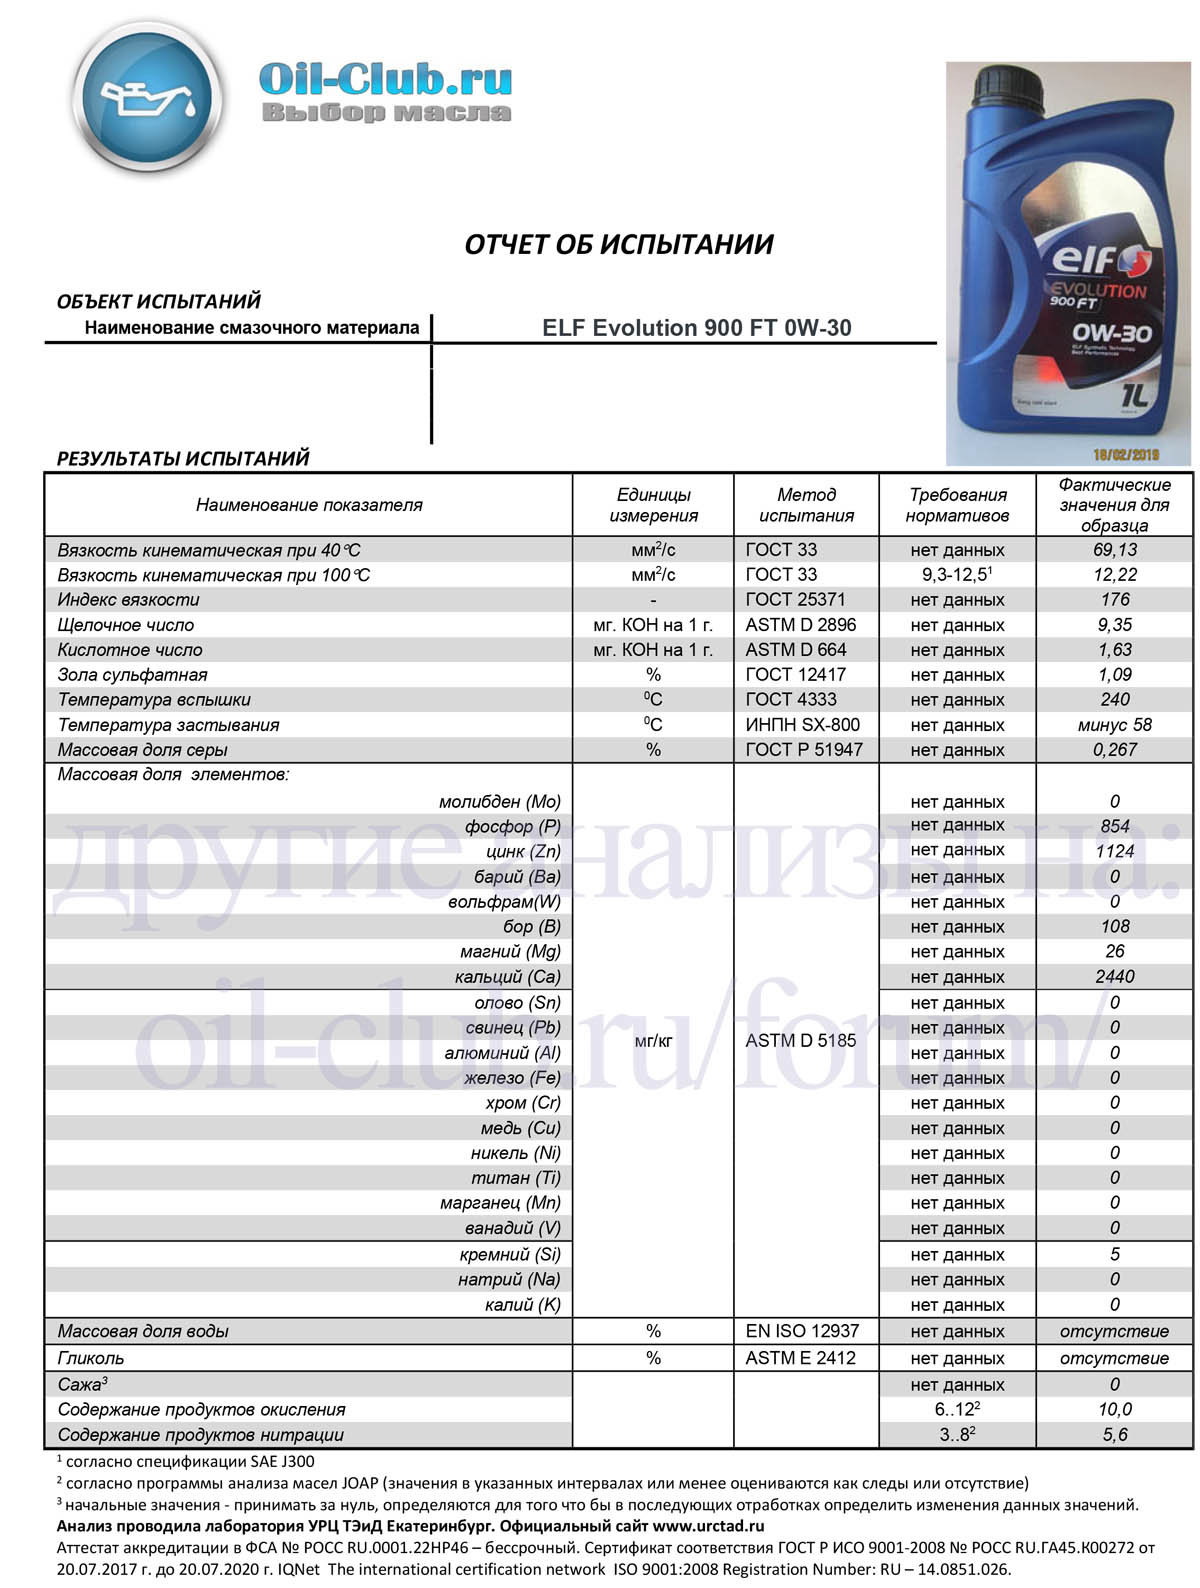 Изучение особенностей моторного масла ELF Evolution 900 FT 0W-30